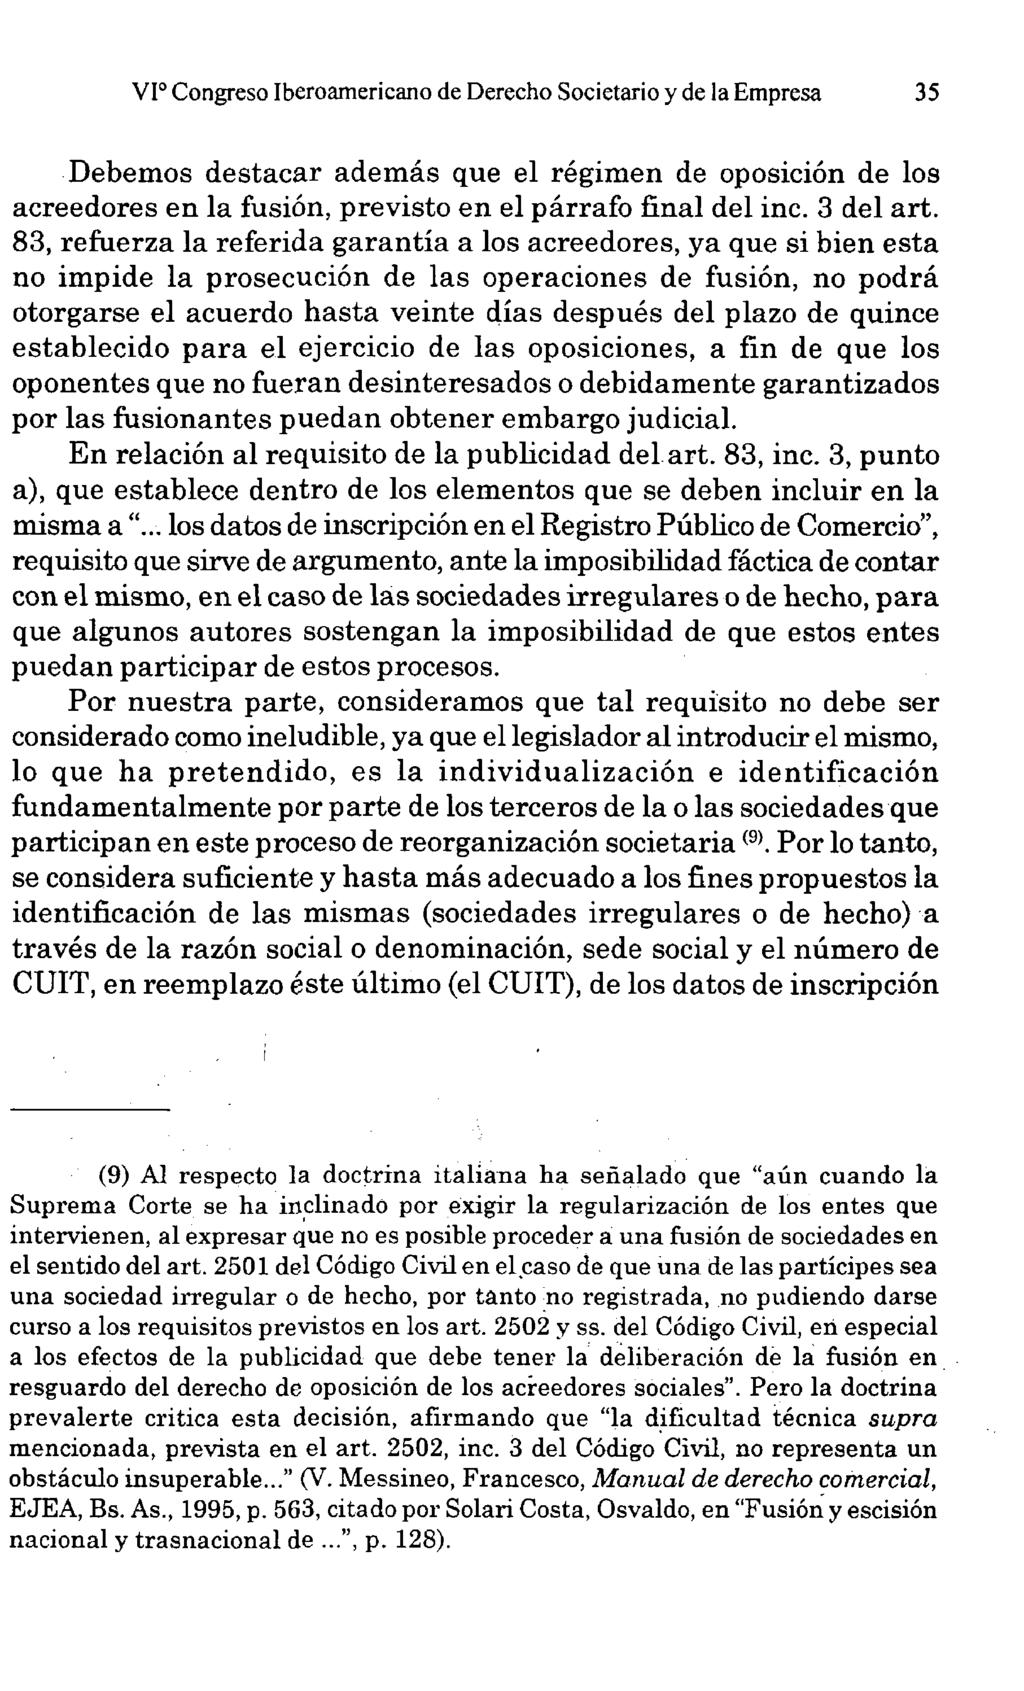 VI o Congreso Iberoamericano de Derecho Societario y de la Empresa 35 destacar además que el régimen de oposición de los acreedores en la fusión, previsto en el párrafo final del inc. 3 del art.